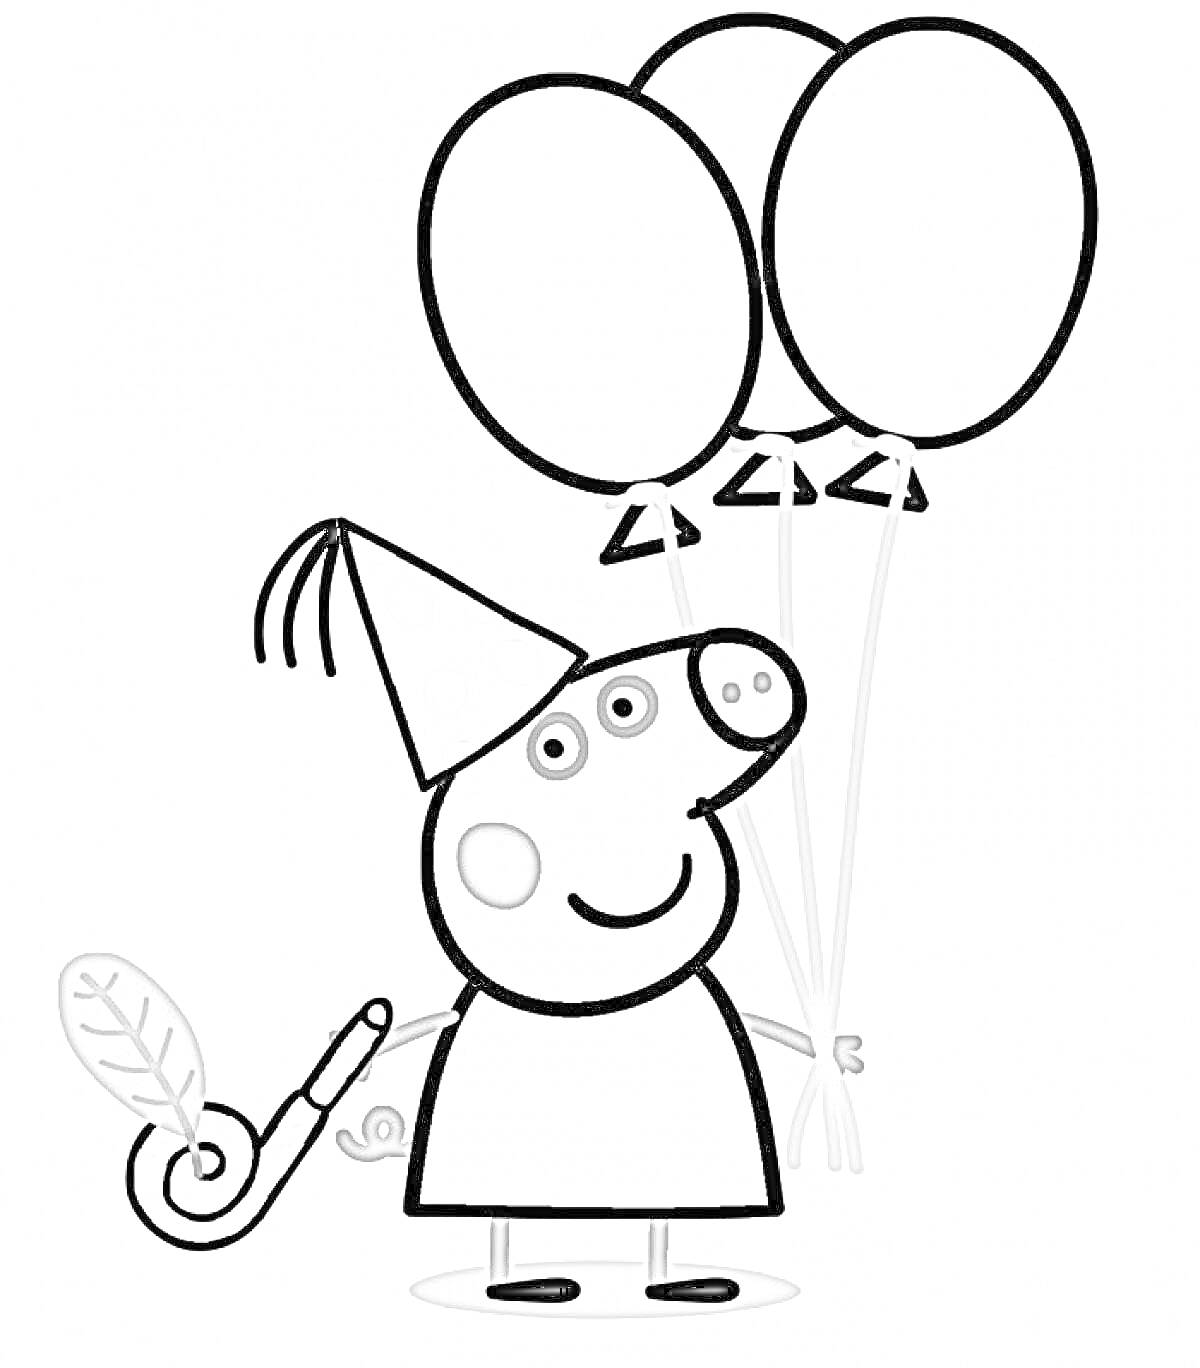 Свинка Пеппа с тремя воздушными шарами и дудочкой в колпаке